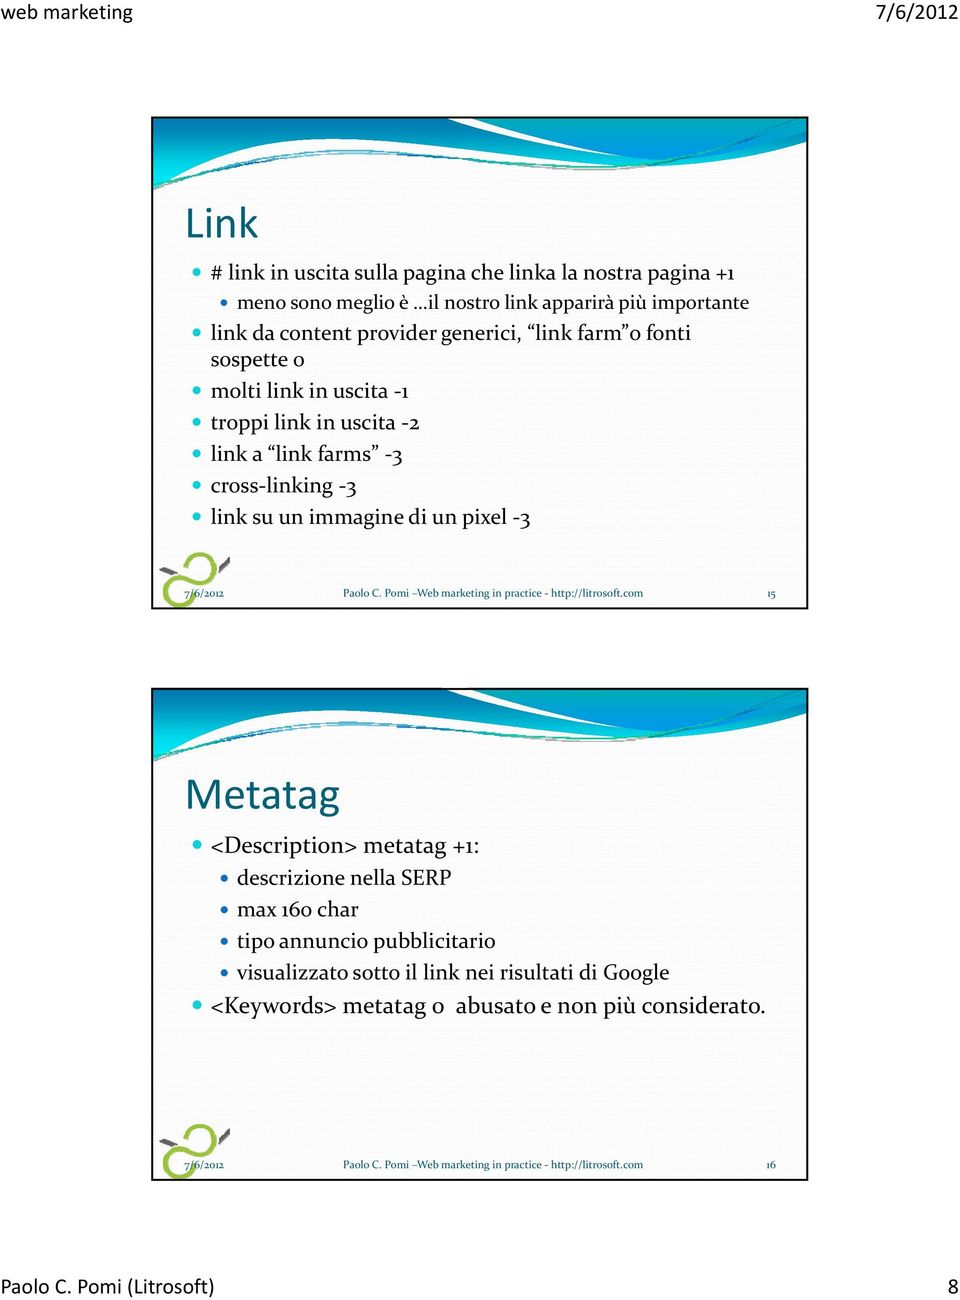 Pomi Web marketing in practice - http://litrosoft.